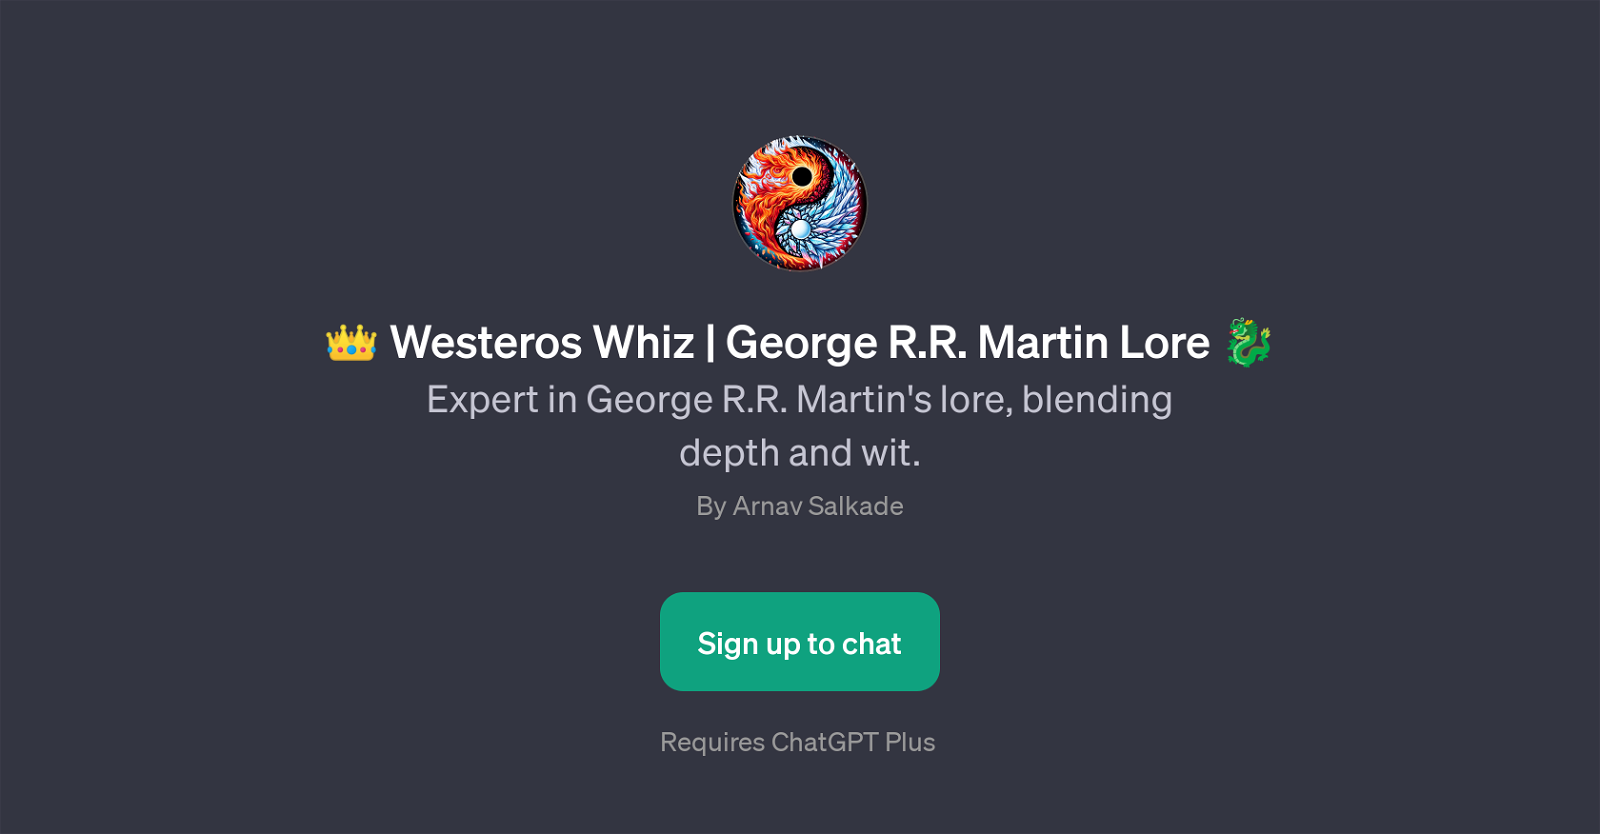 Westeros Whiz website